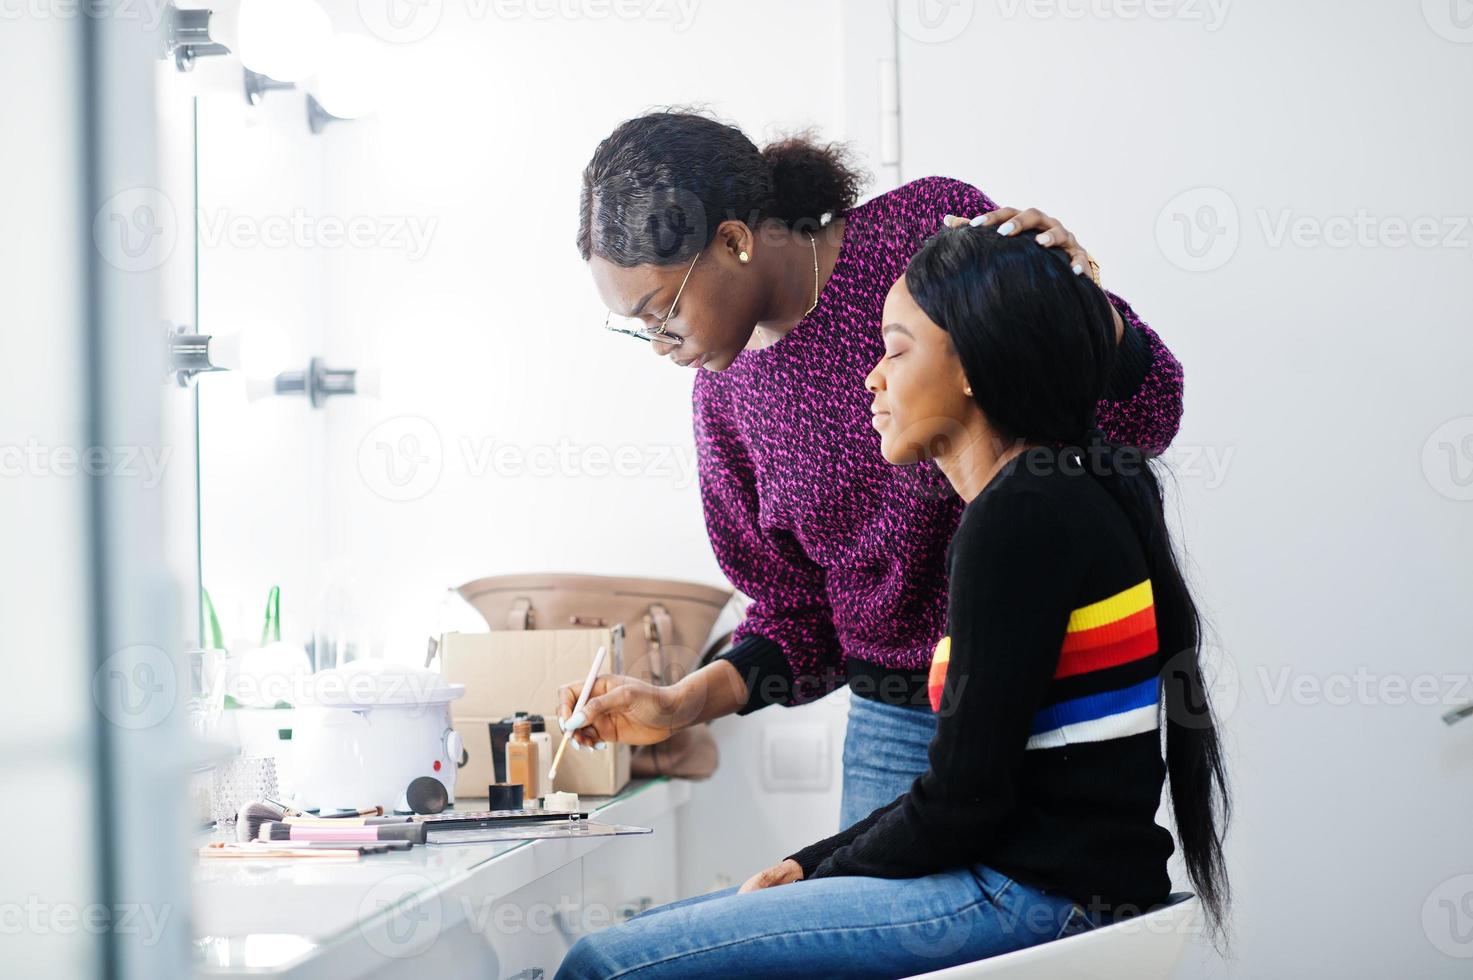 femme afro-américaine se maquillant par une maquilleuse au salon de beauté. photo